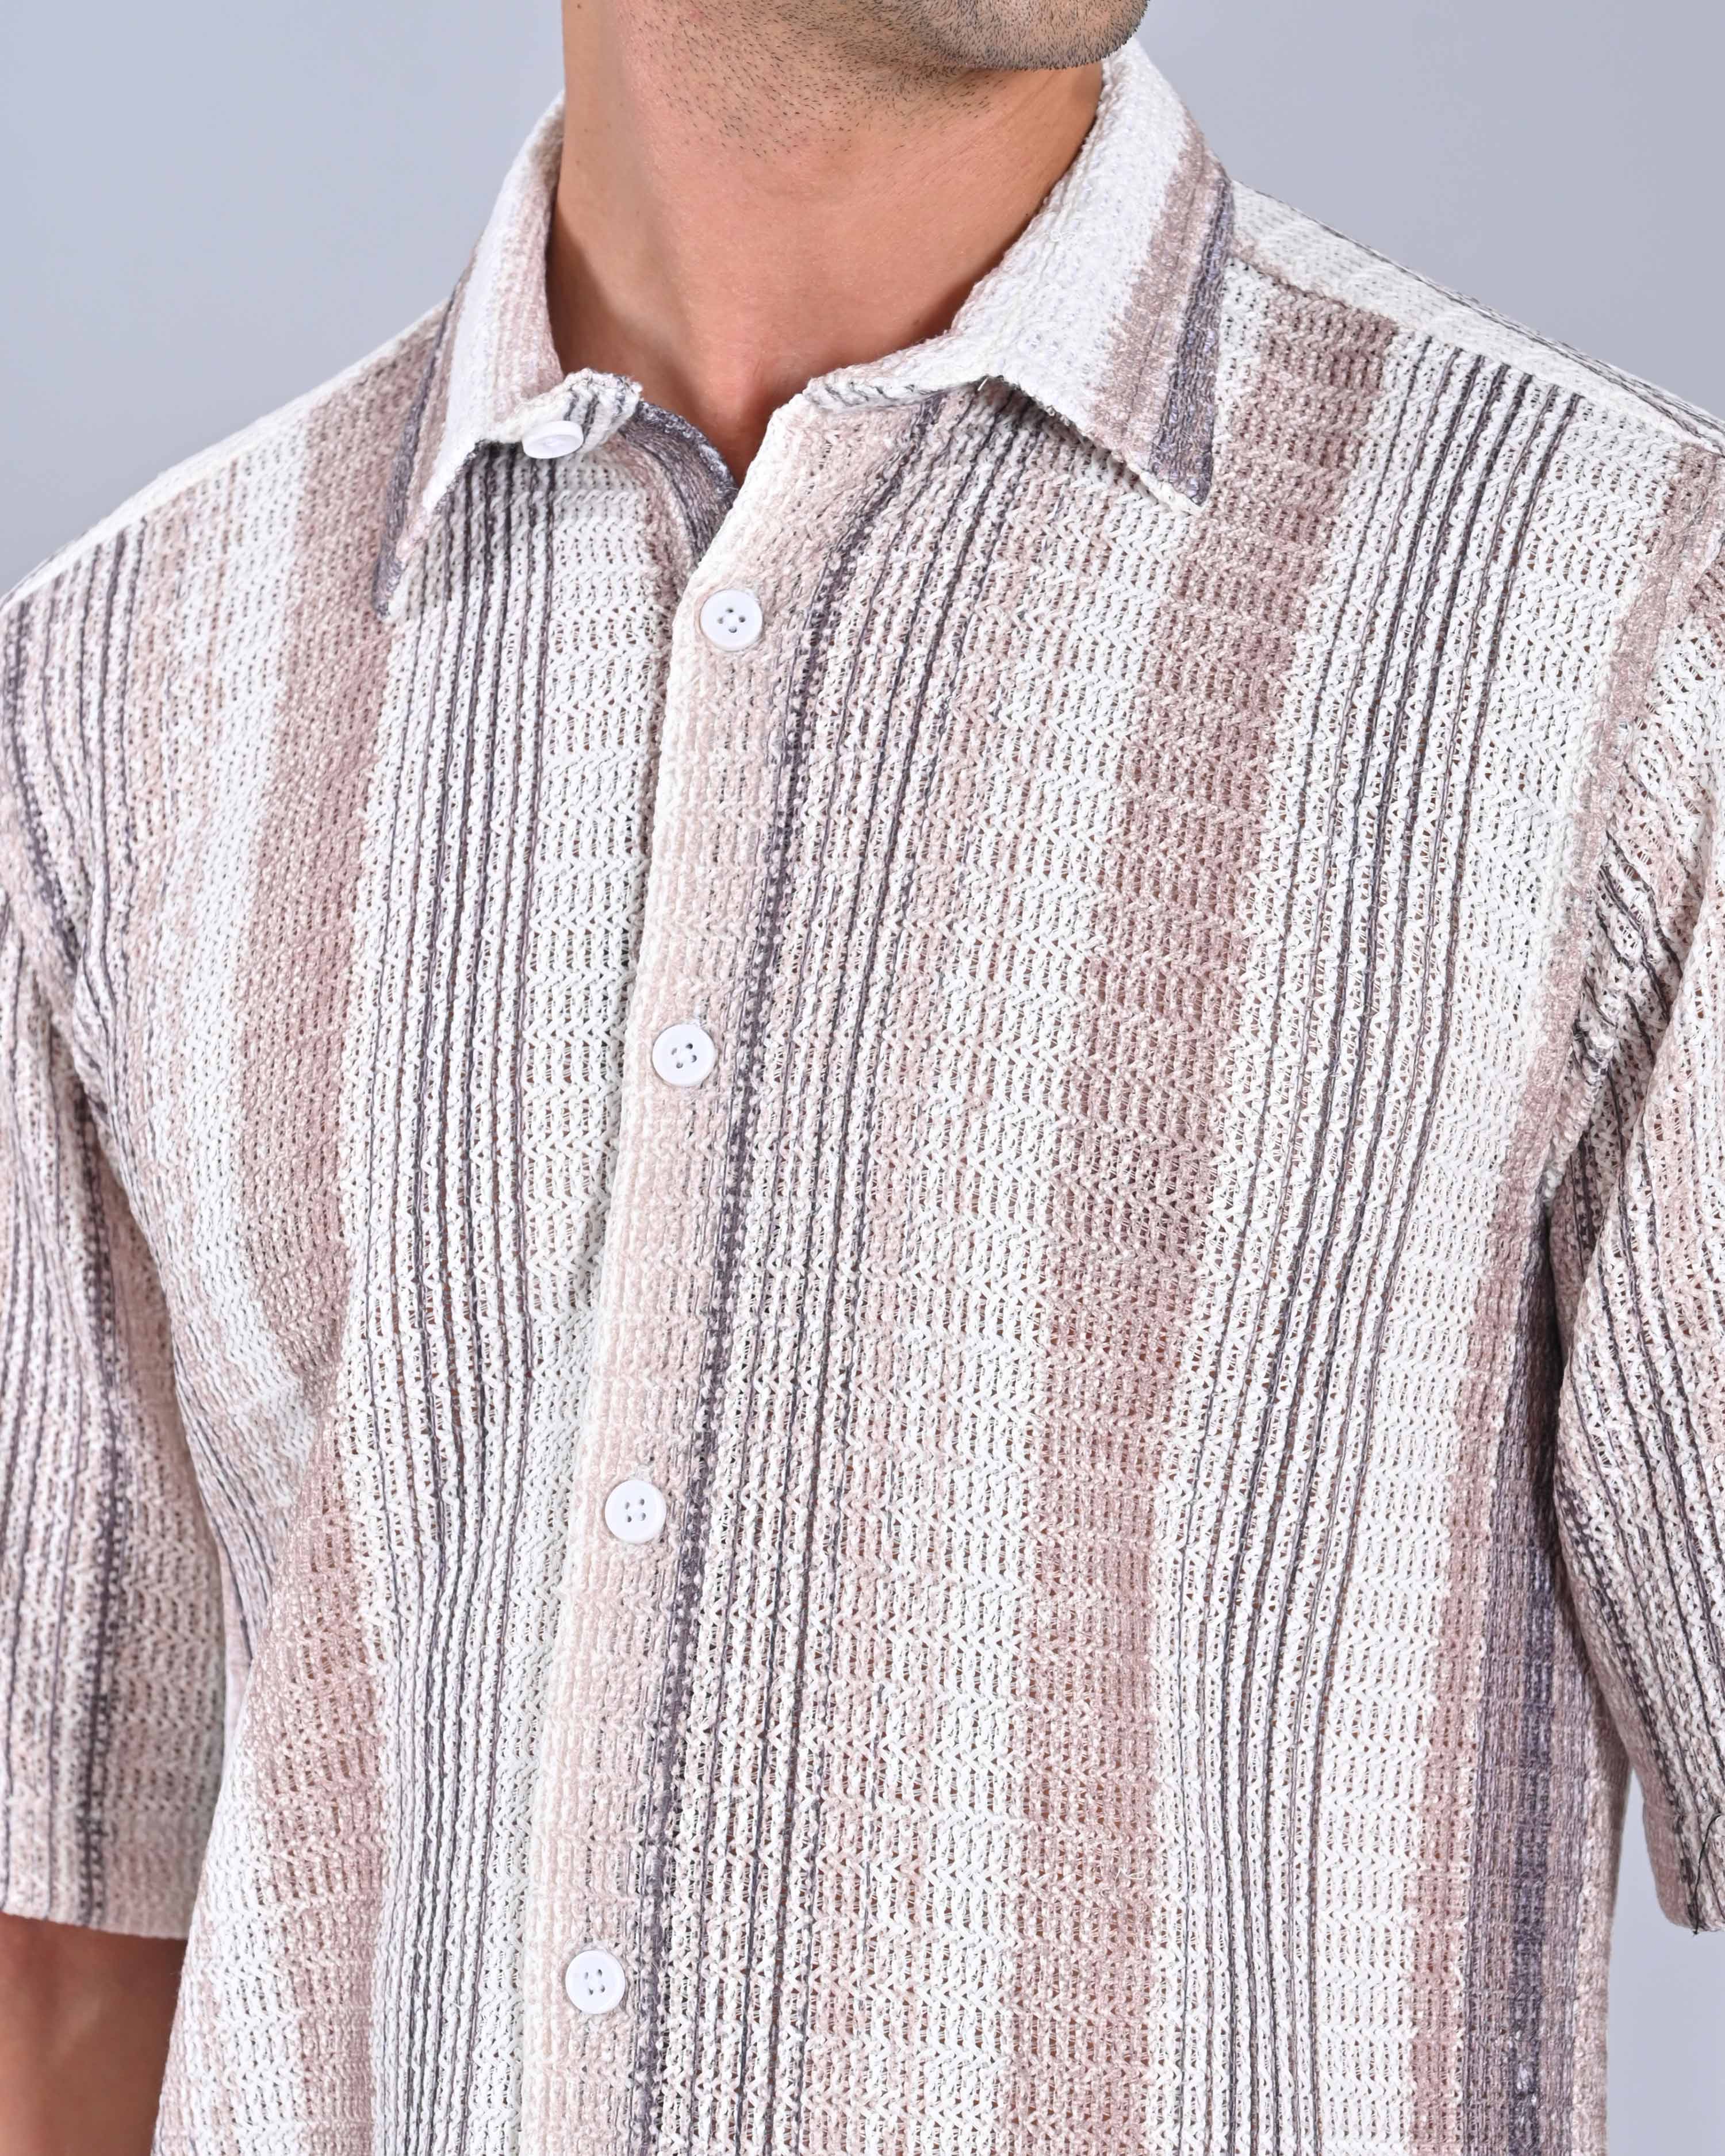 Buy Men's Lavender Half Sleeve Tweed Shirt Online